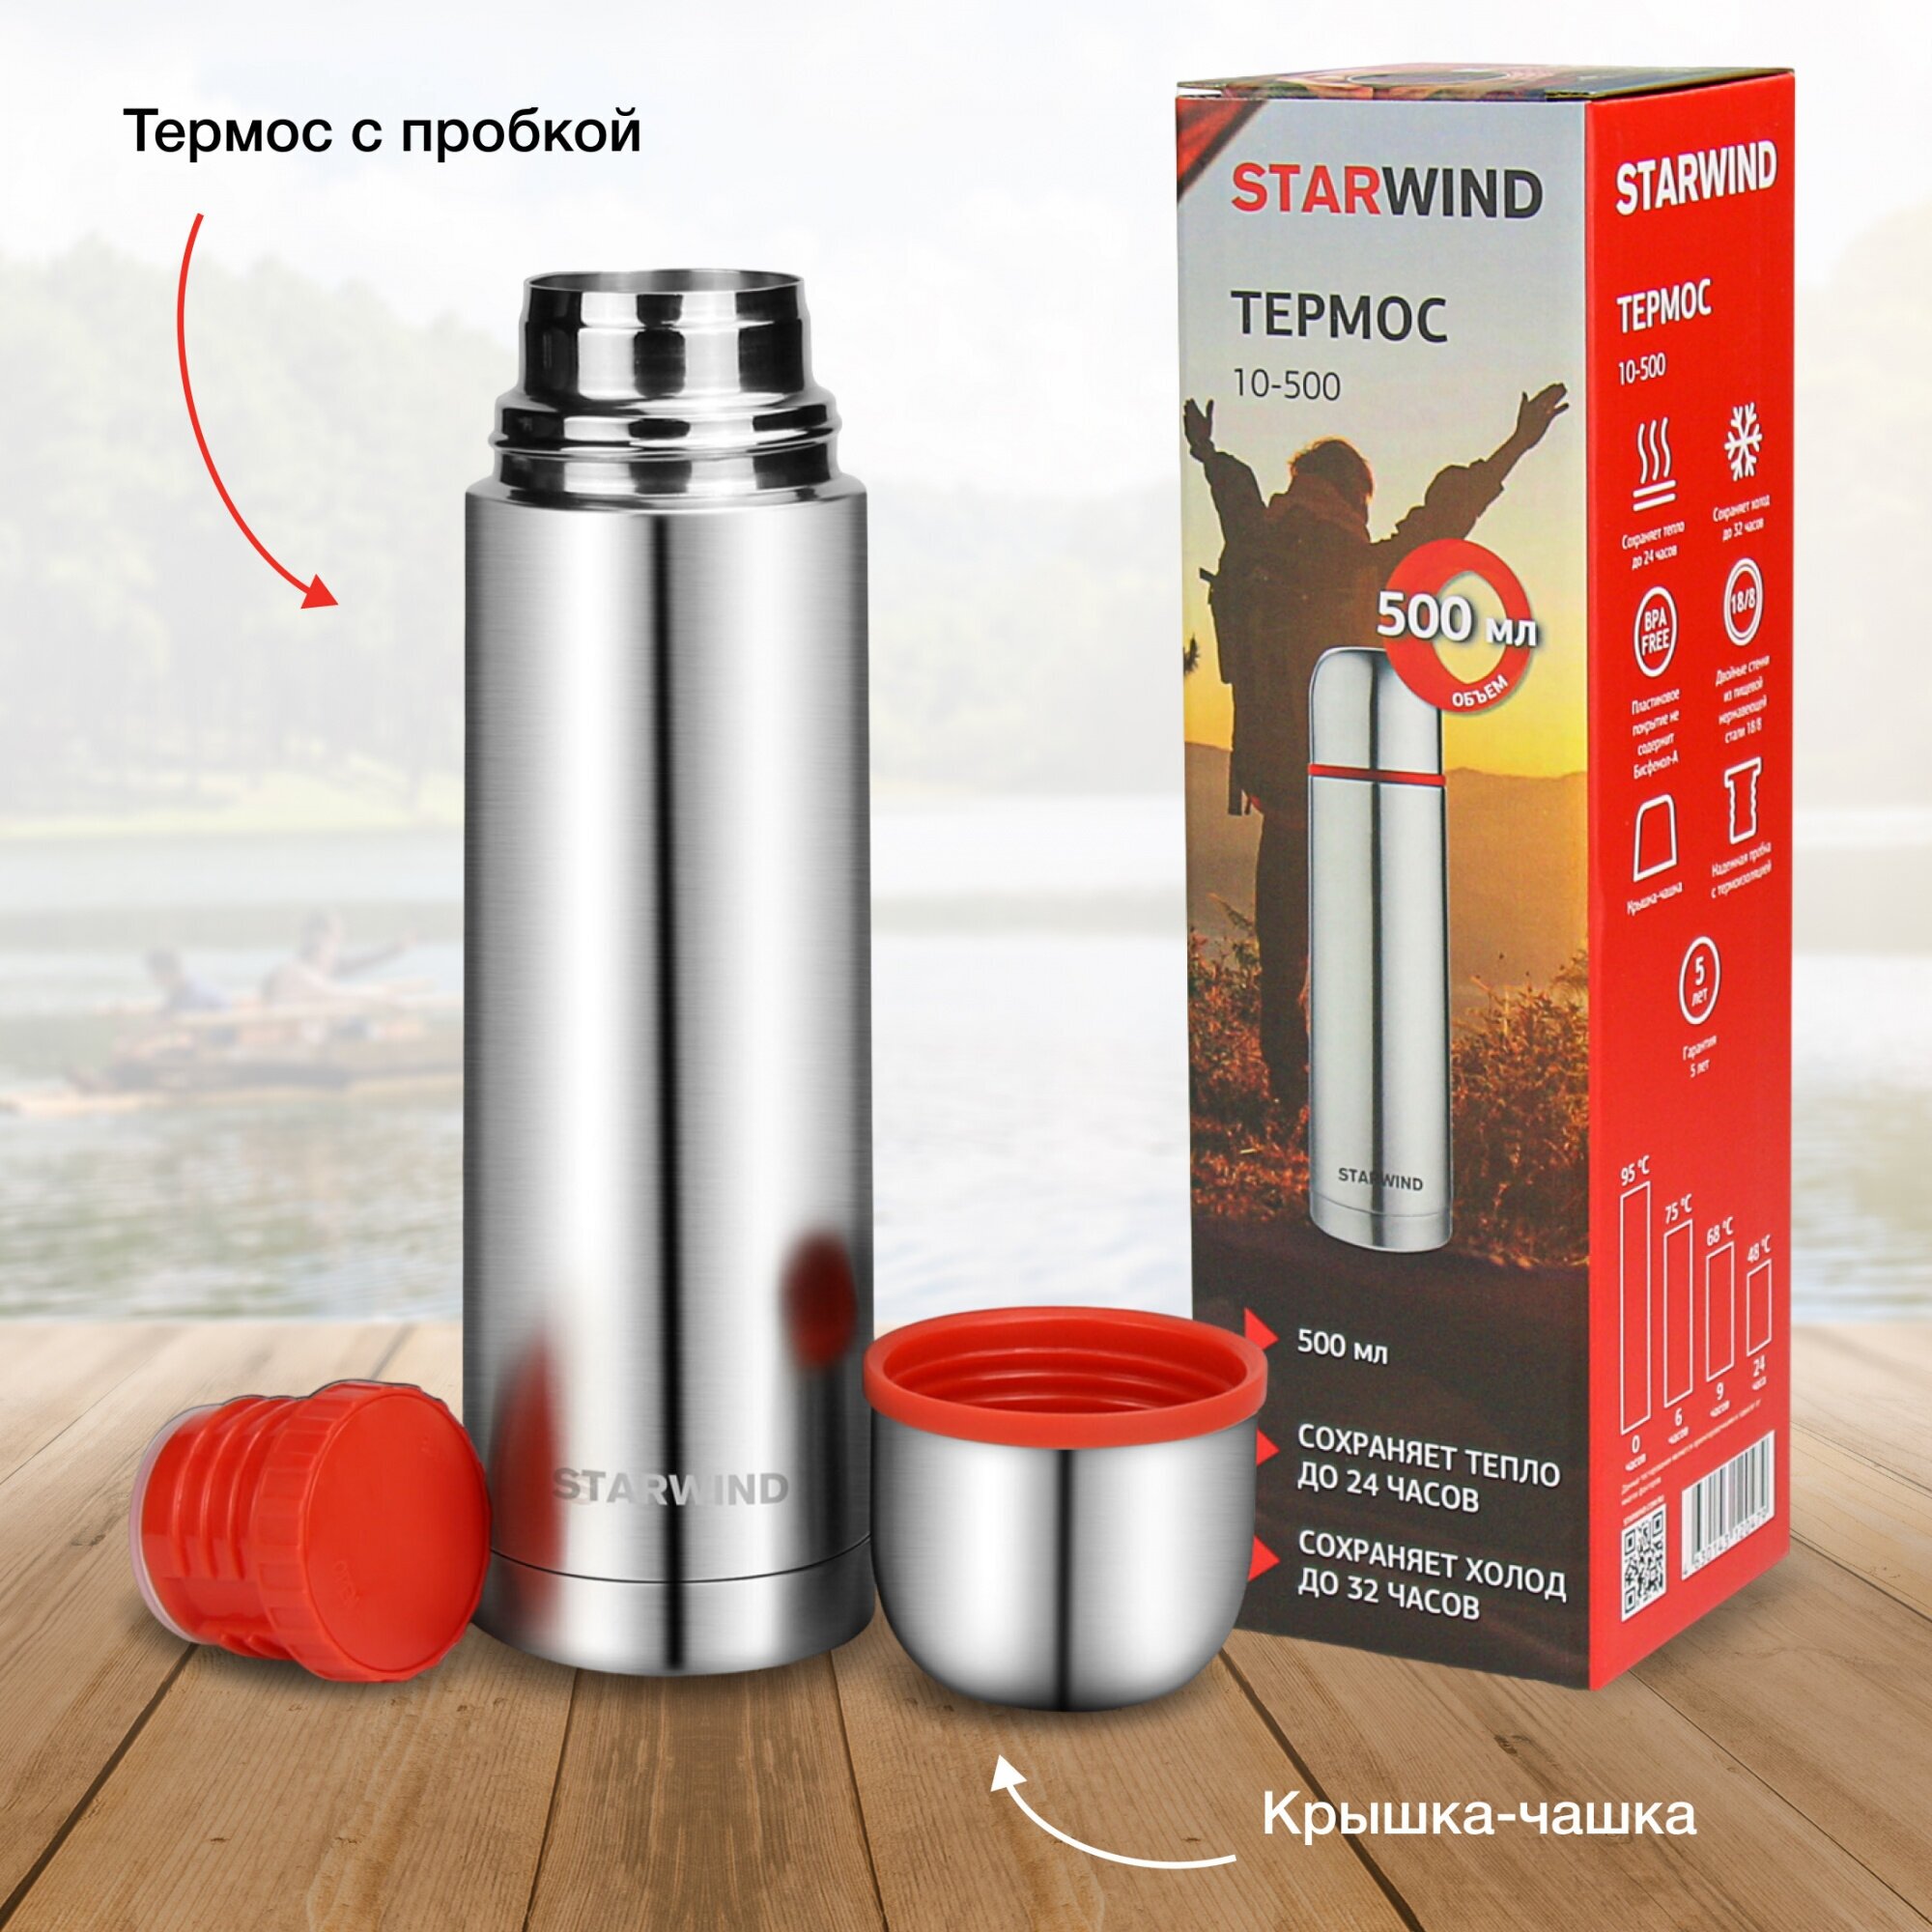 Термос для напитков Starwind 10-500 0.5л. серебристый/красный картонная коробка - фотография № 18